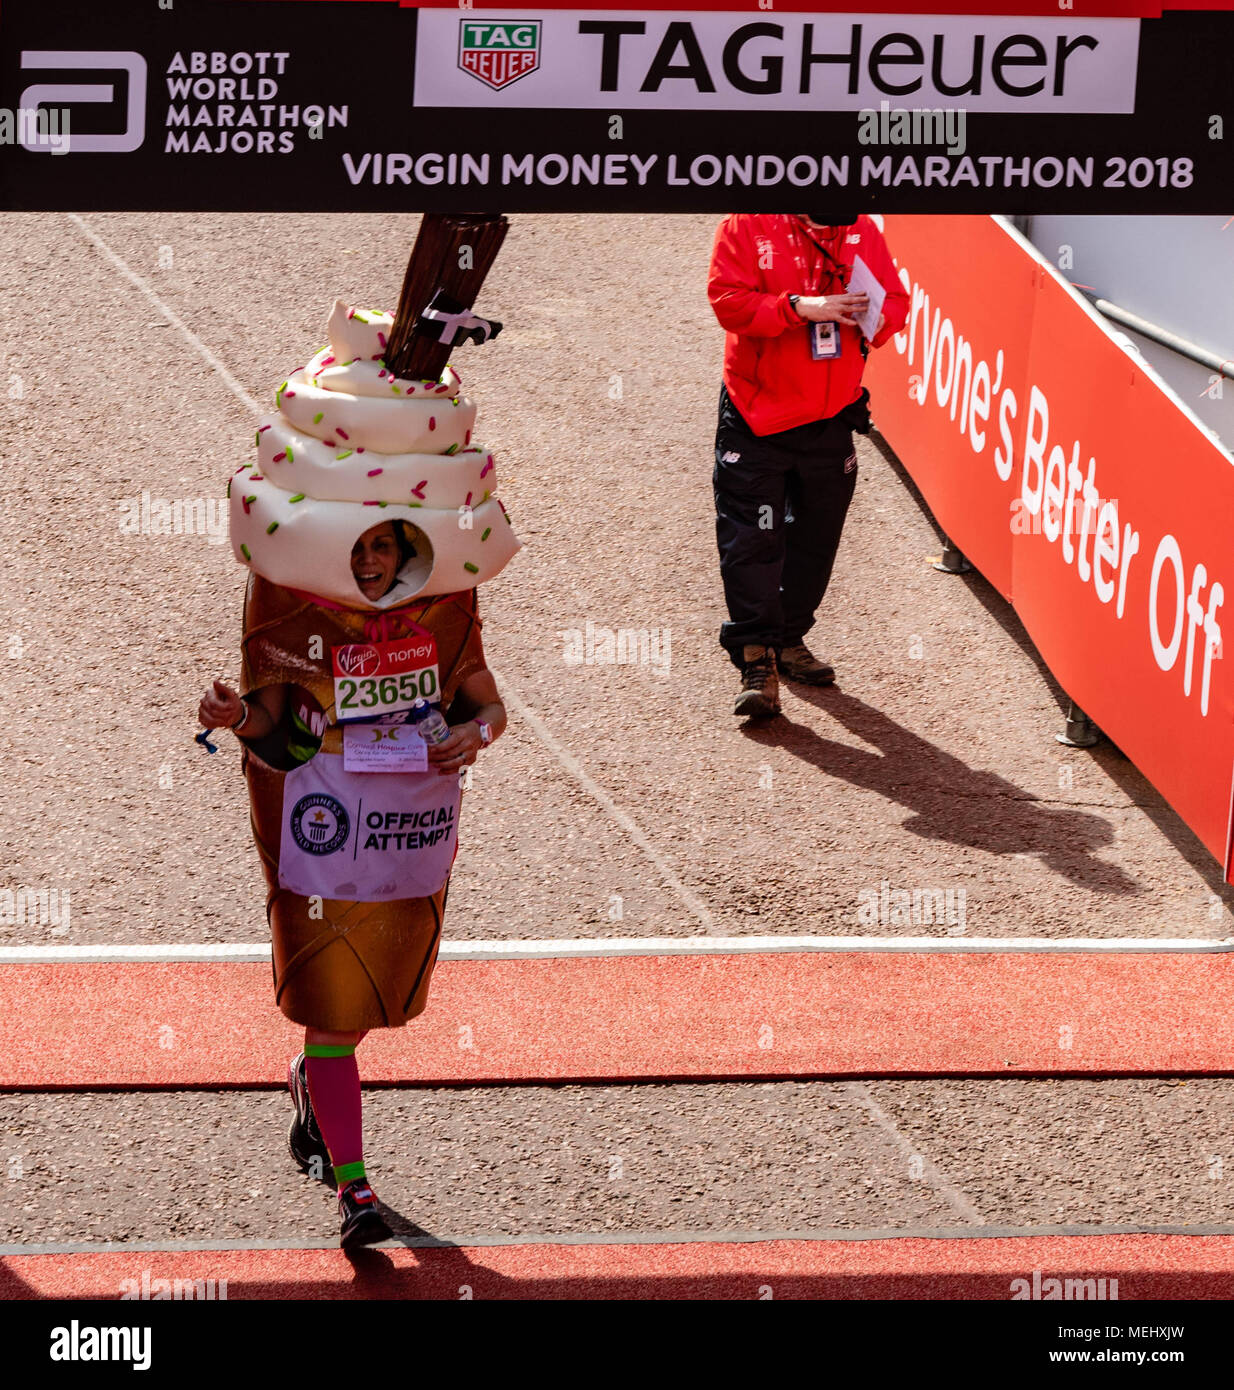 Londra 22 Aprile 2018 la maratona di Londra, un concorrente vestito come un molto apt Gelato, completa la maratona di Londra il credito Ian Davidson/Alamy Live News Foto Stock